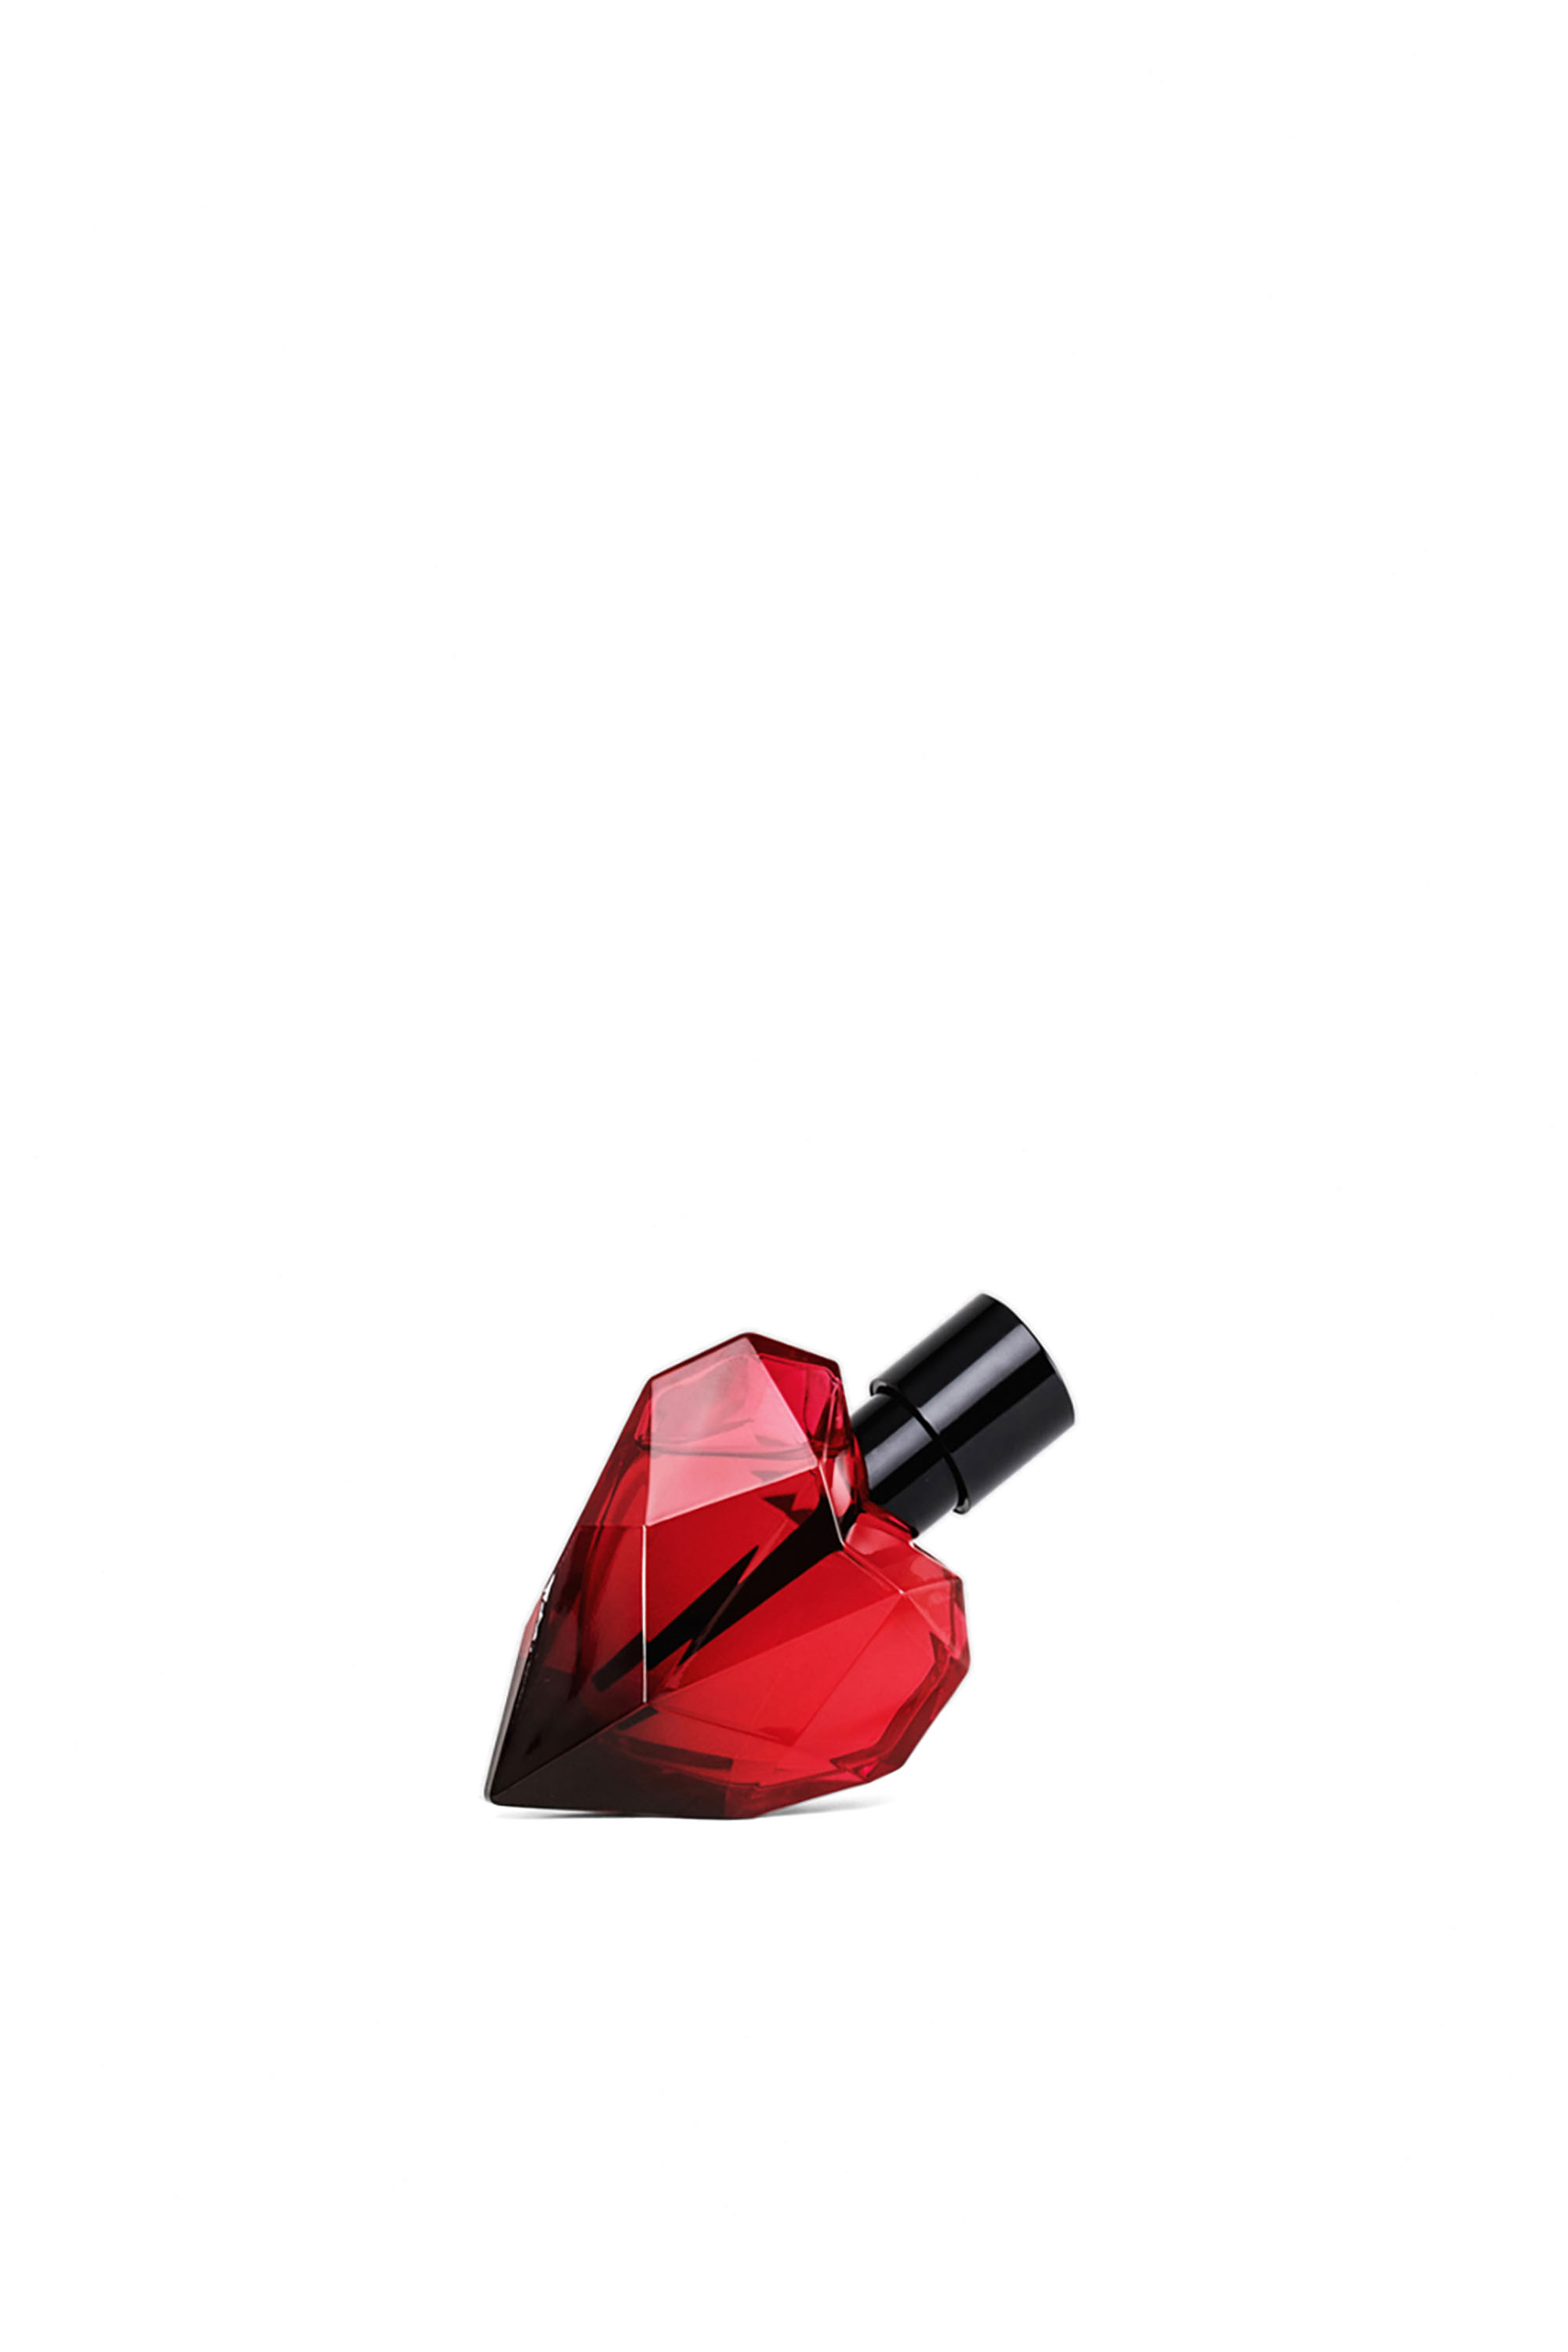 Diesel - LOVERDOSE RED KISS EAU DE PARFUM 30ML,  - Image 1